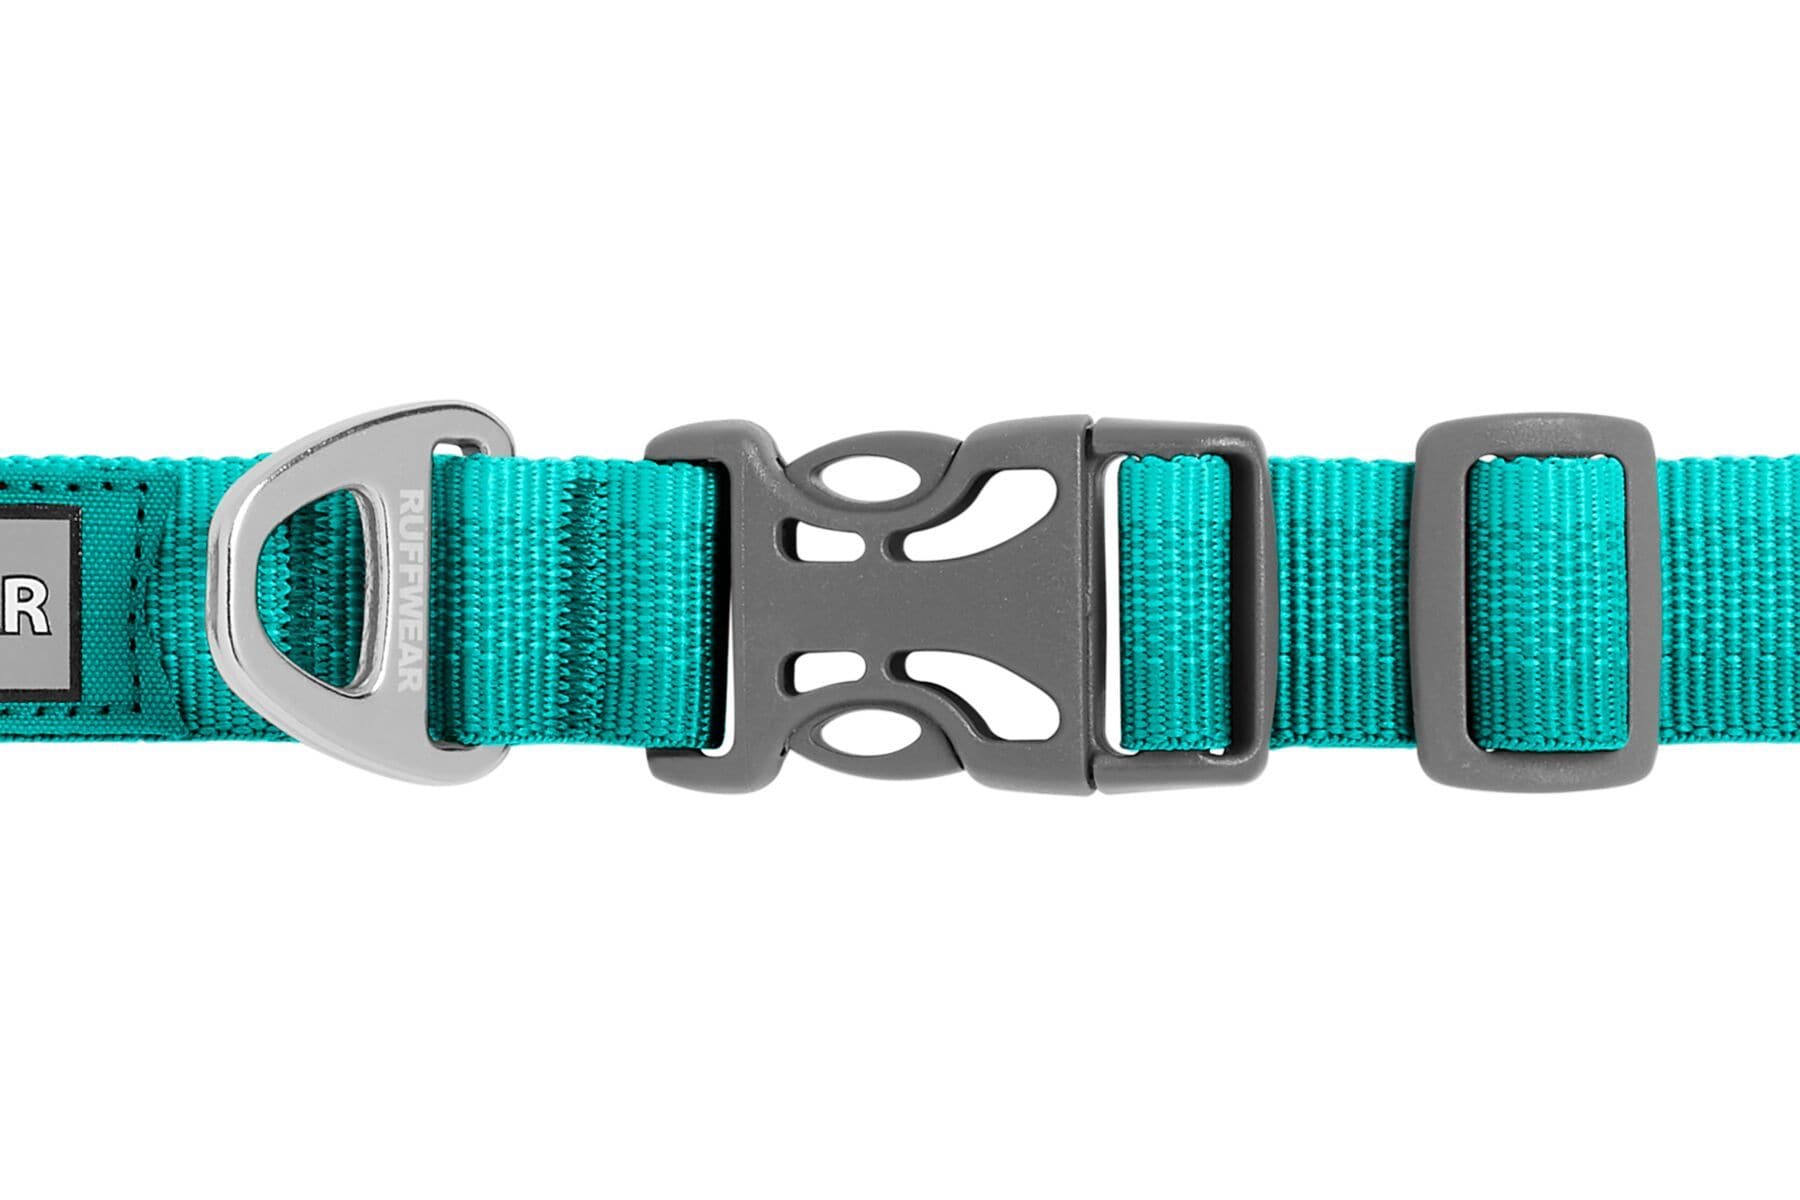 Collar para Perros Modelo Front Range Collar Verde Aqua (Aurora Teal) de Ruffwear